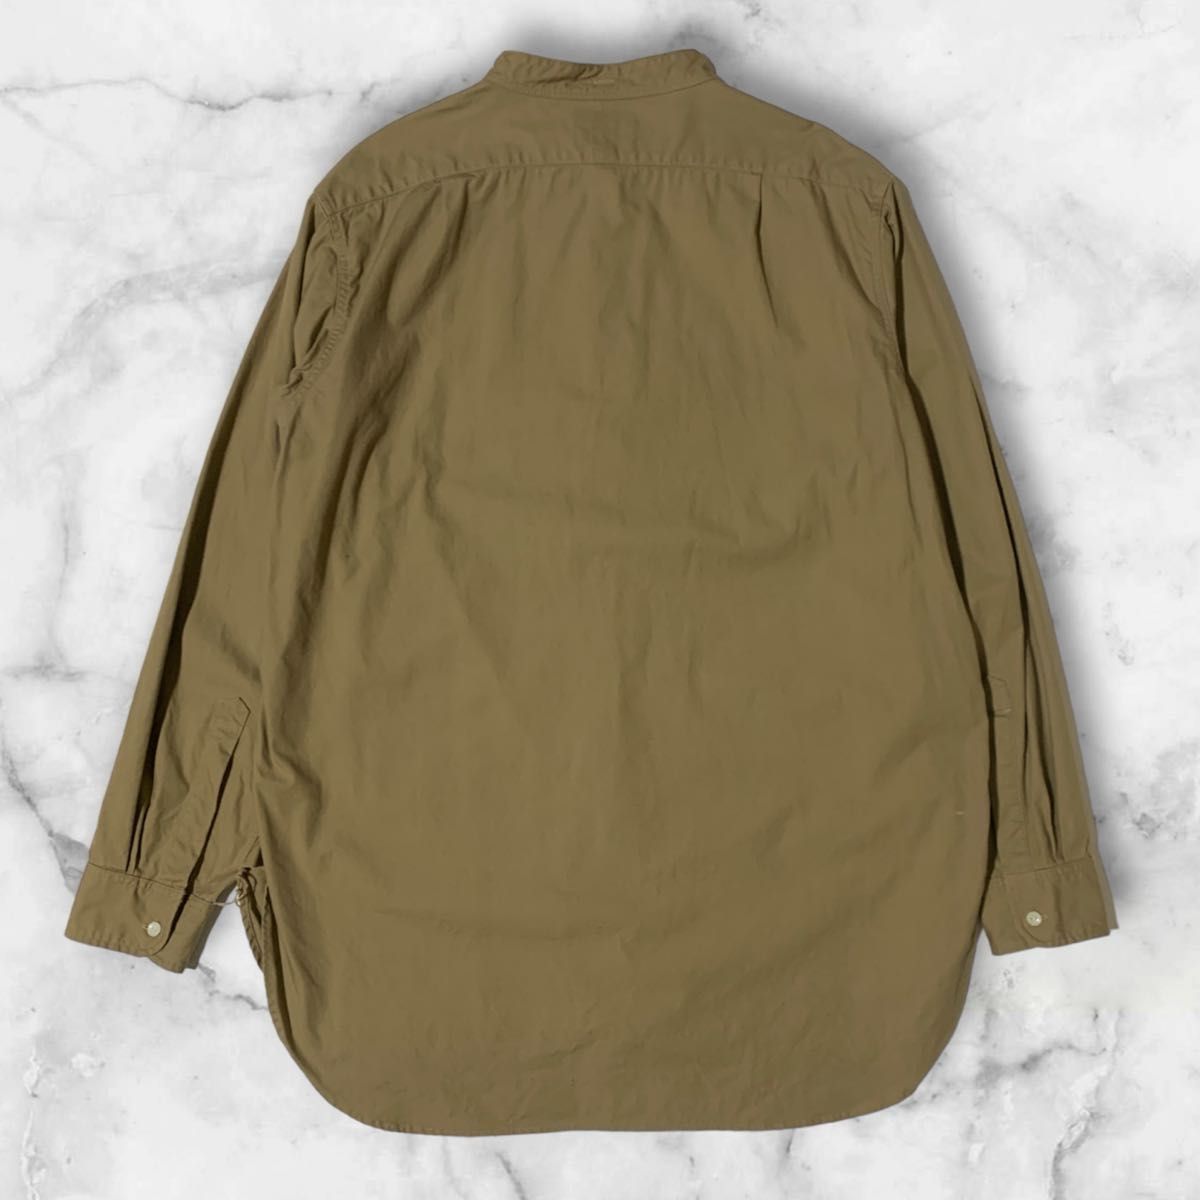 【超美品】即完売 BONCOURA バンドカラー ロングシャツ ミリタリー ベージュ 長袖シャツ 40サイズ